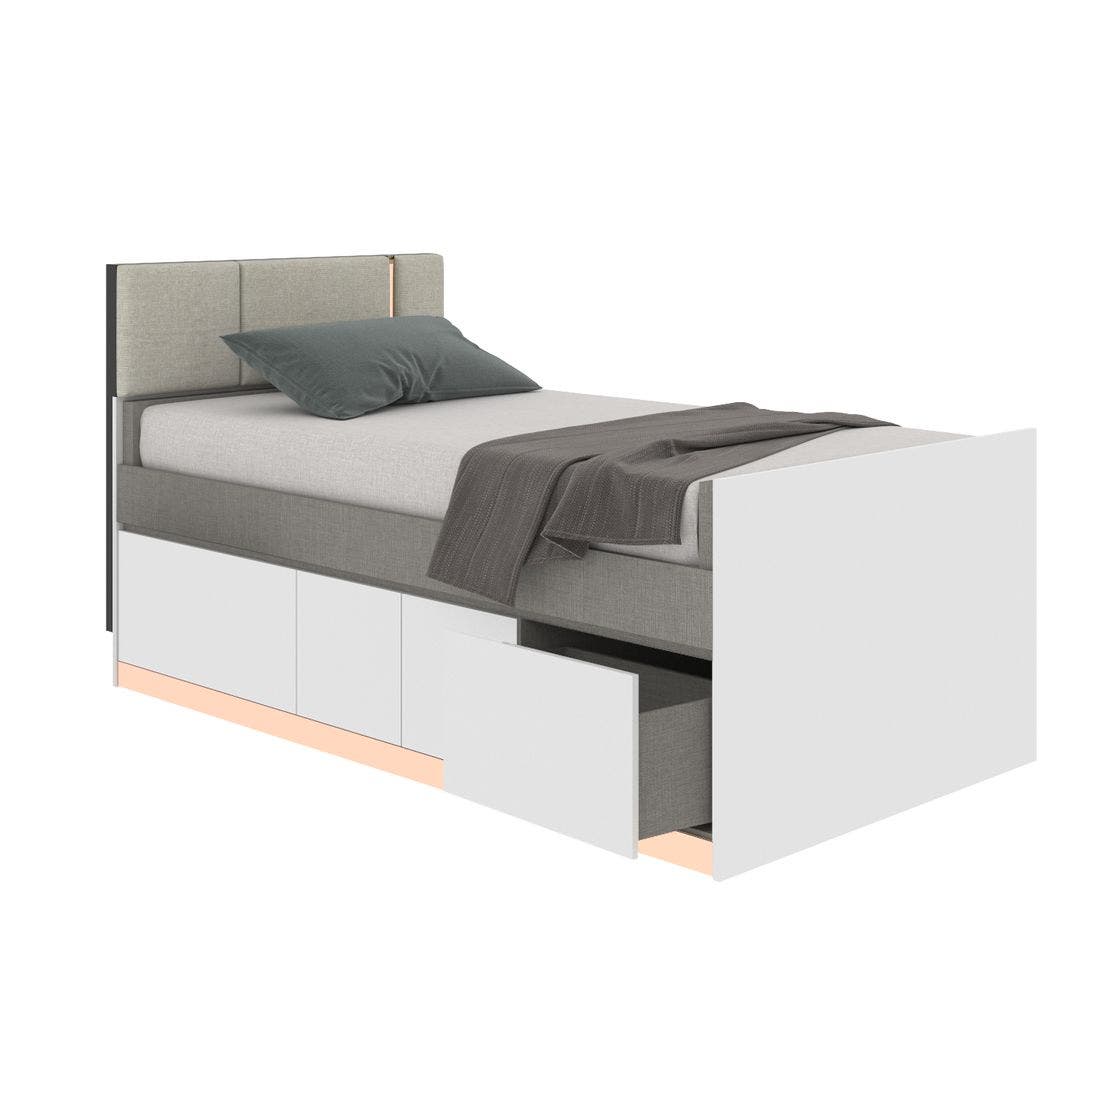 19203774-blisz-furniture-bedroom-furniture-beds-06